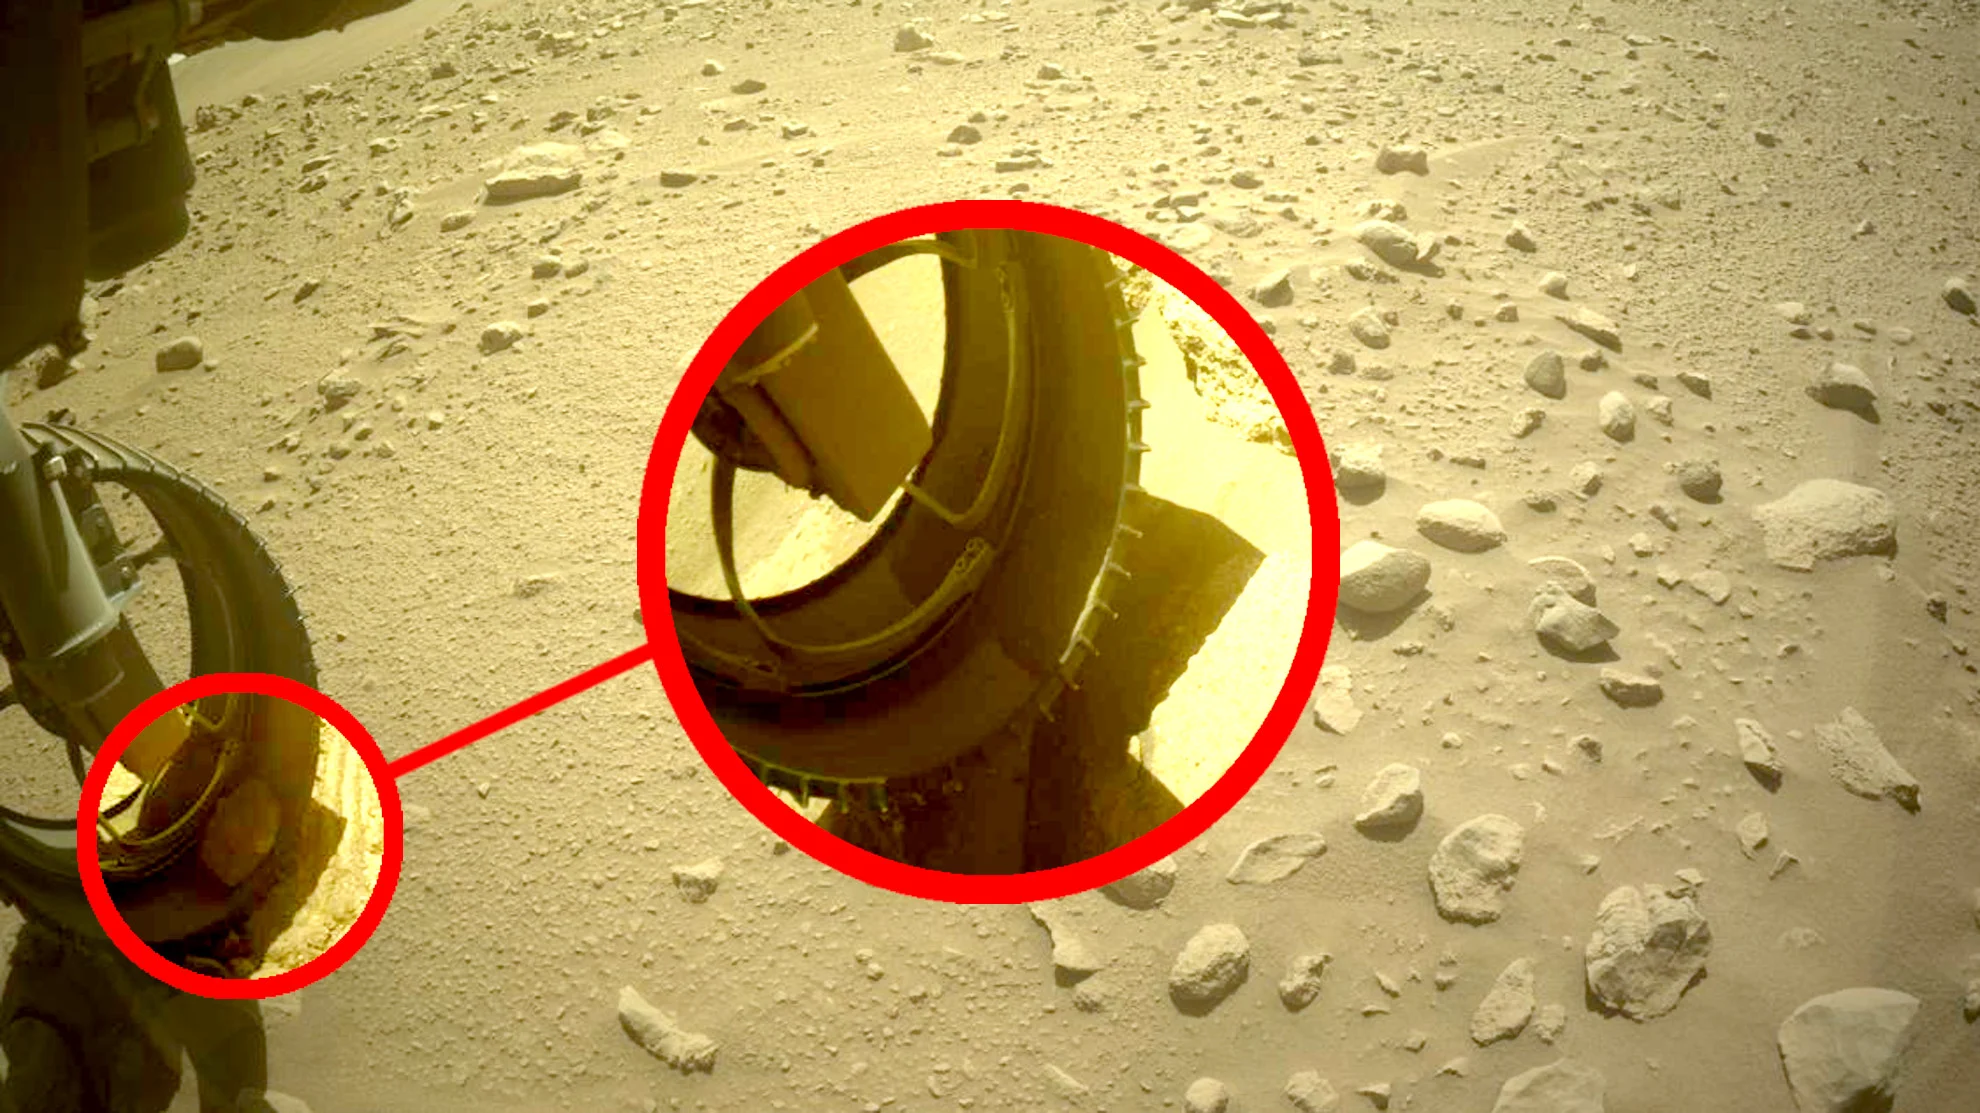 NASA's Perseverance rover lost its pet Martian rock